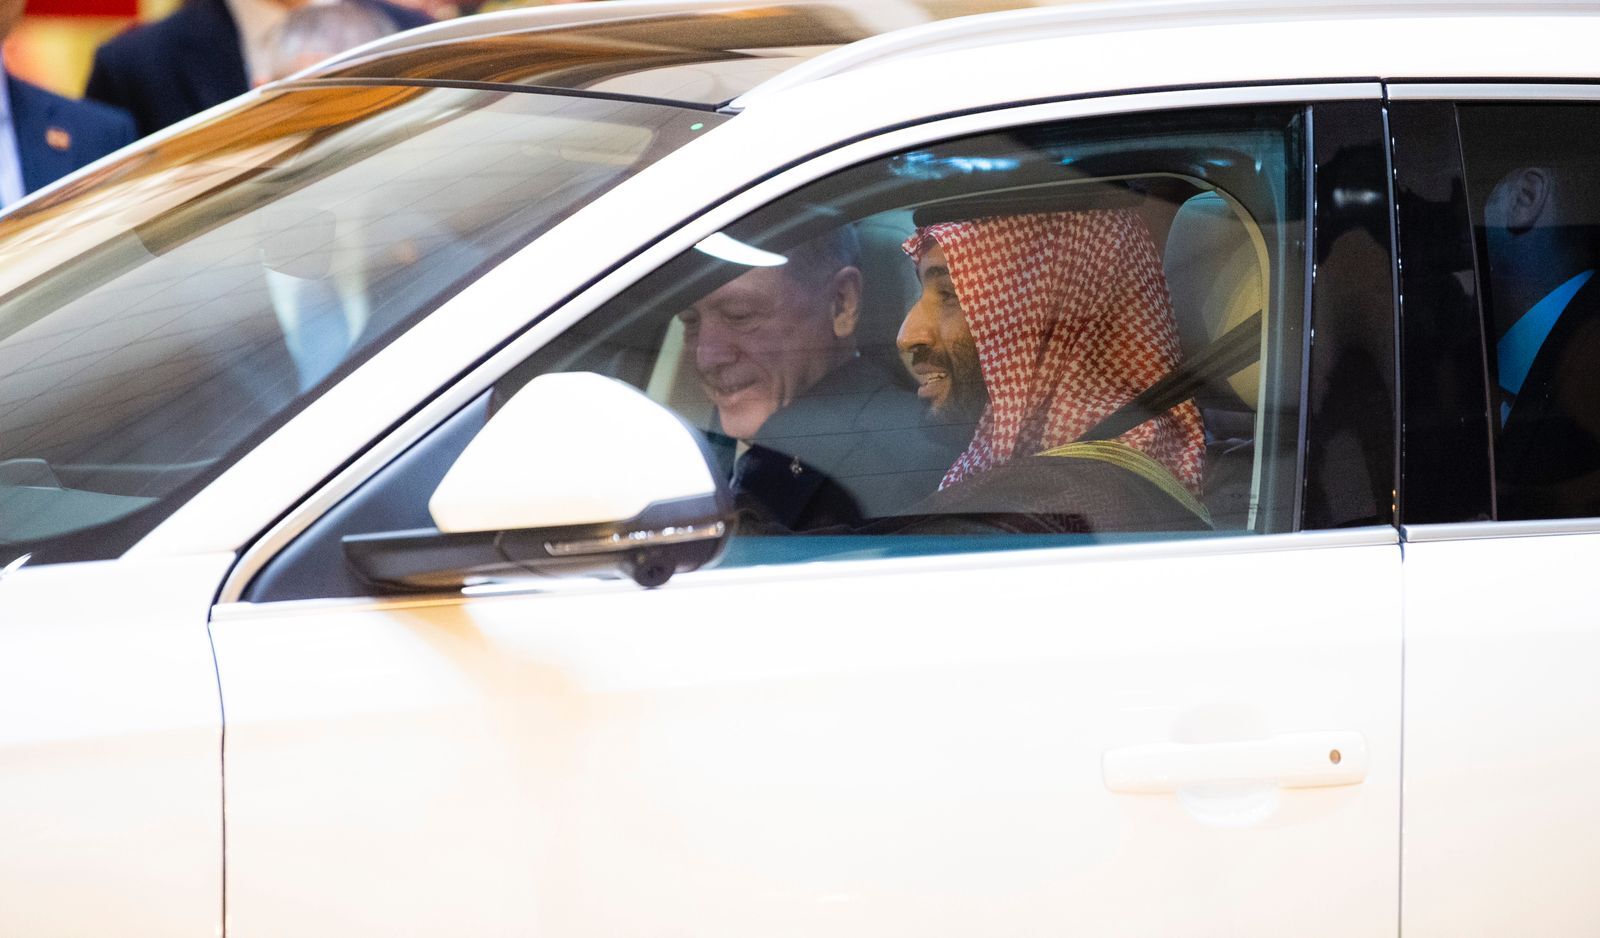 اردوغان یک دستگاه خودروی توگ به ولیعهد سعودی هدیه داد. محمد بن سلمان ولیعهد و نخست وزیر سعودی هم پشت فرمان قرار گرفت و رئیس جمهوری ترکیه را تا محل اقامتش رساند